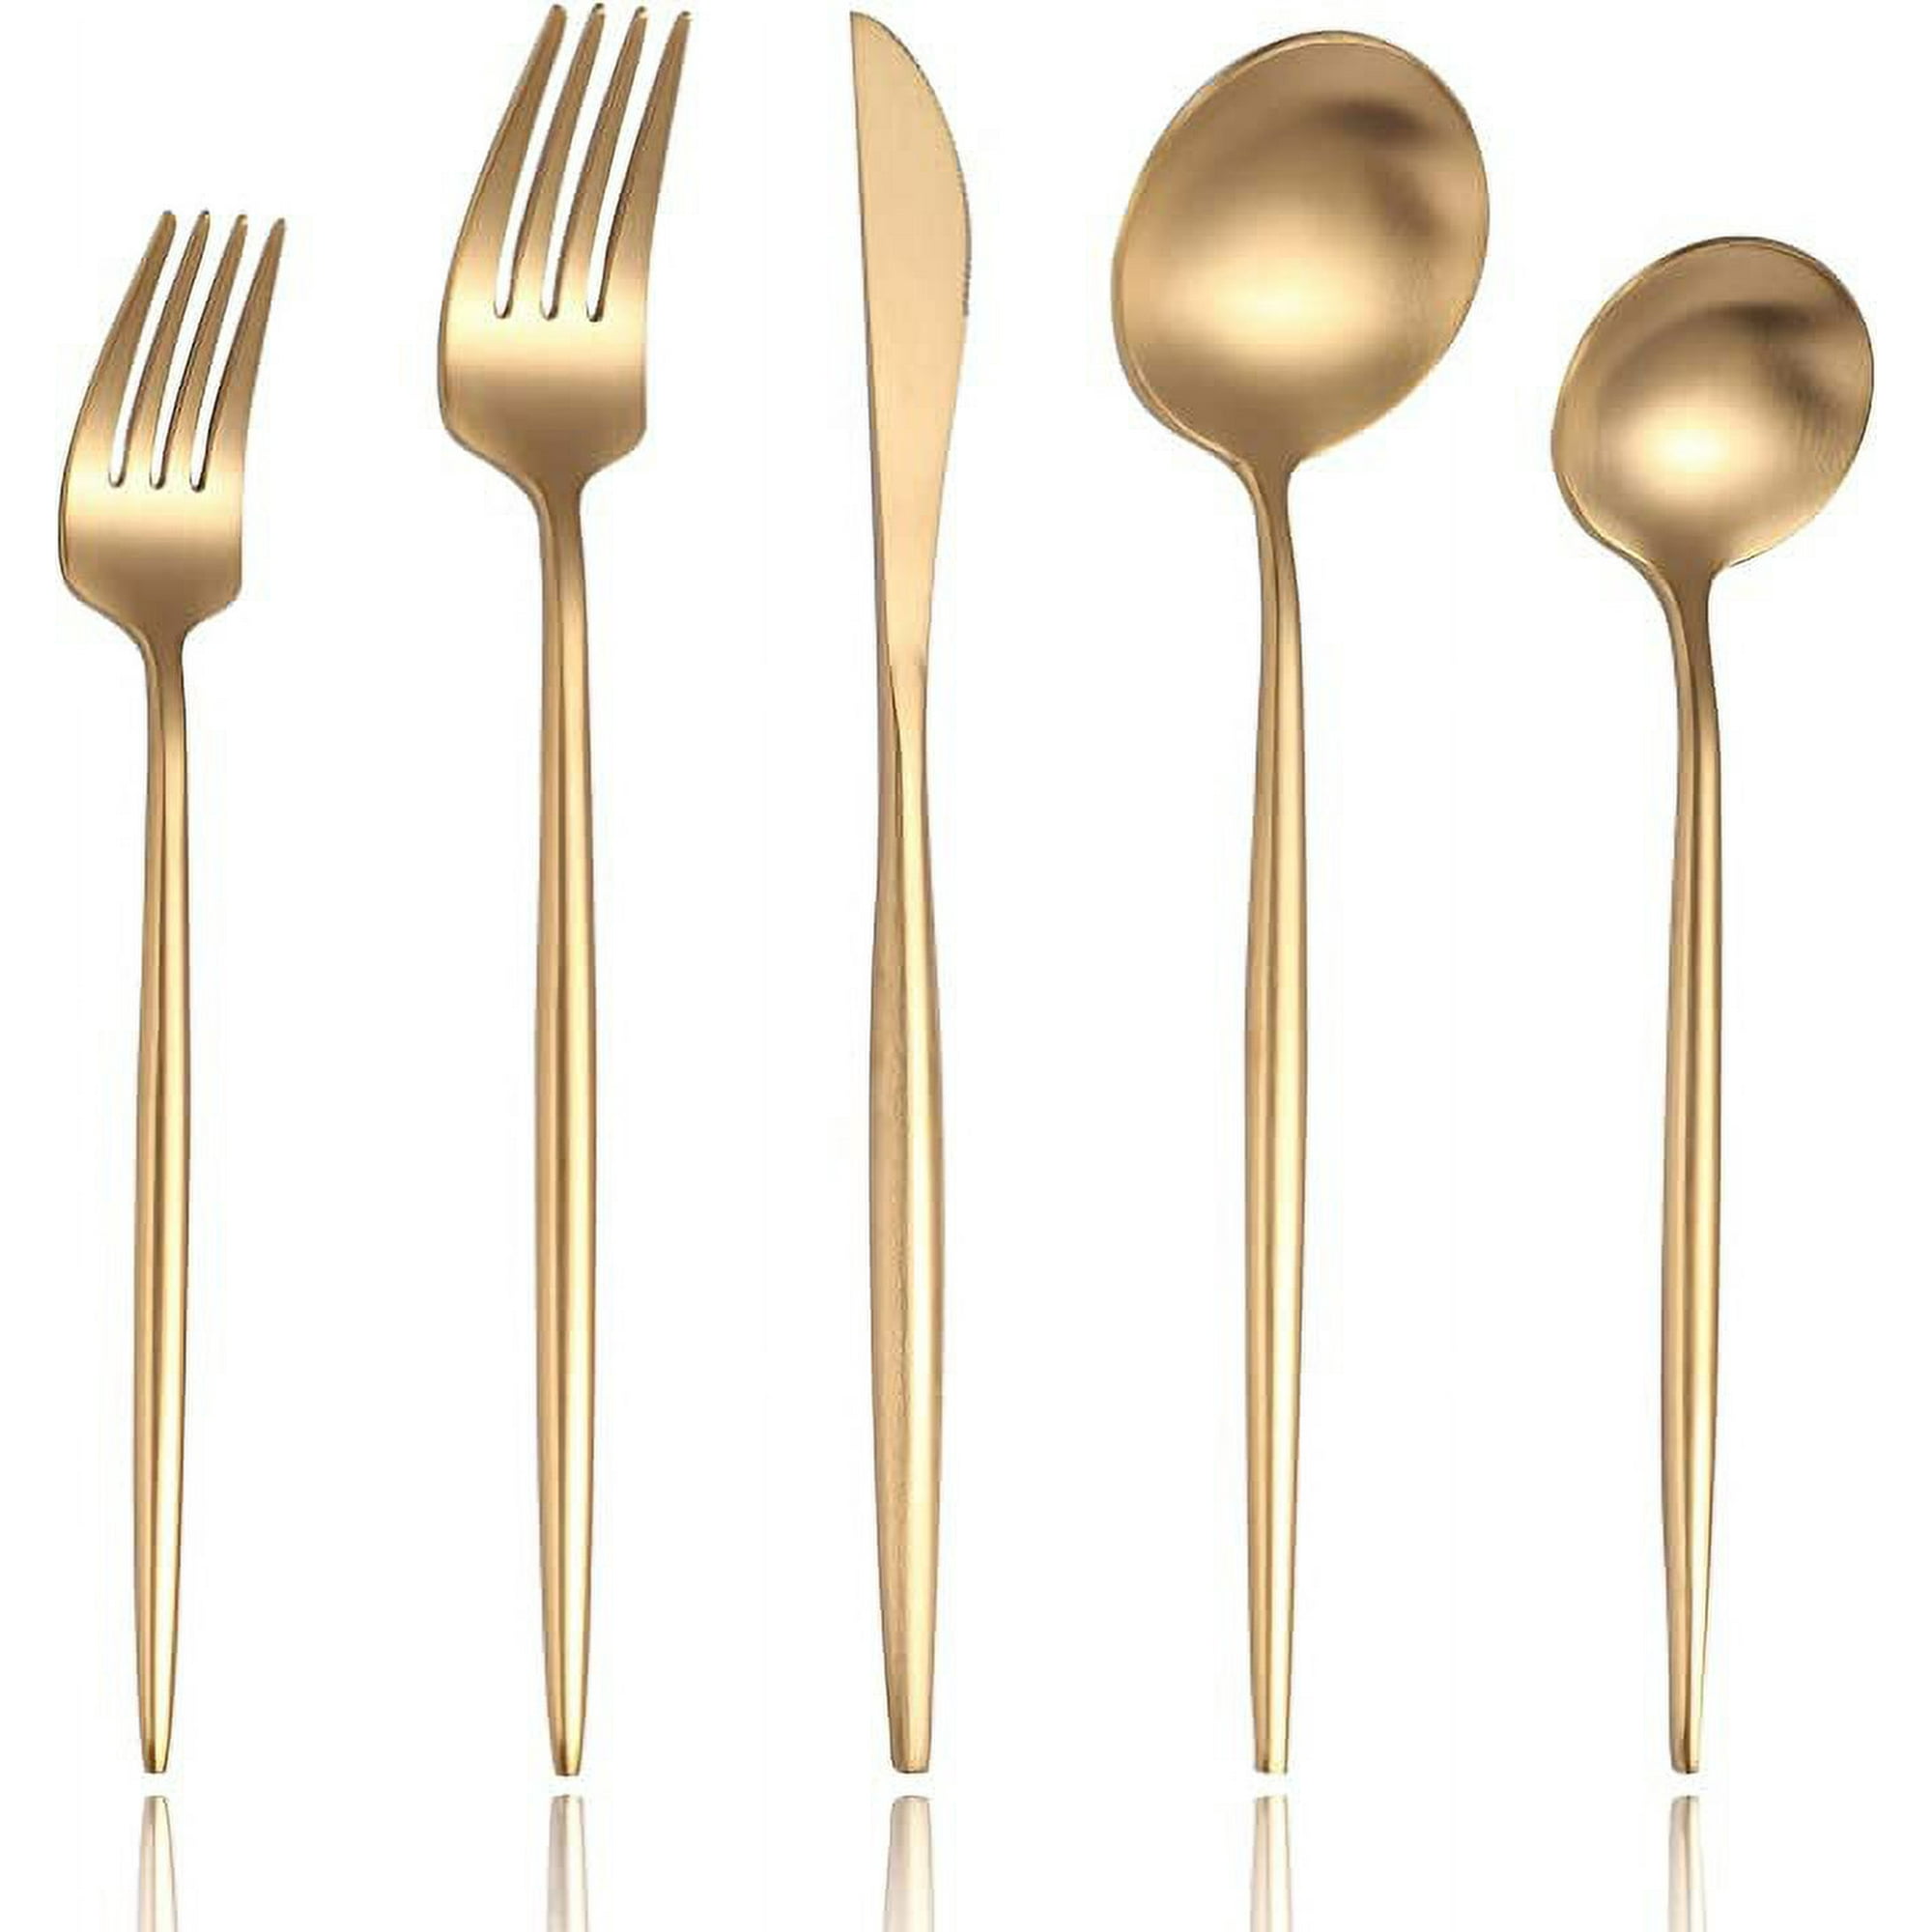 Juego de utensilios de cocina de latón/dorado para cocinar y servir  modernos, juego de 5 utensilios de acero inoxidable dorado aptos para